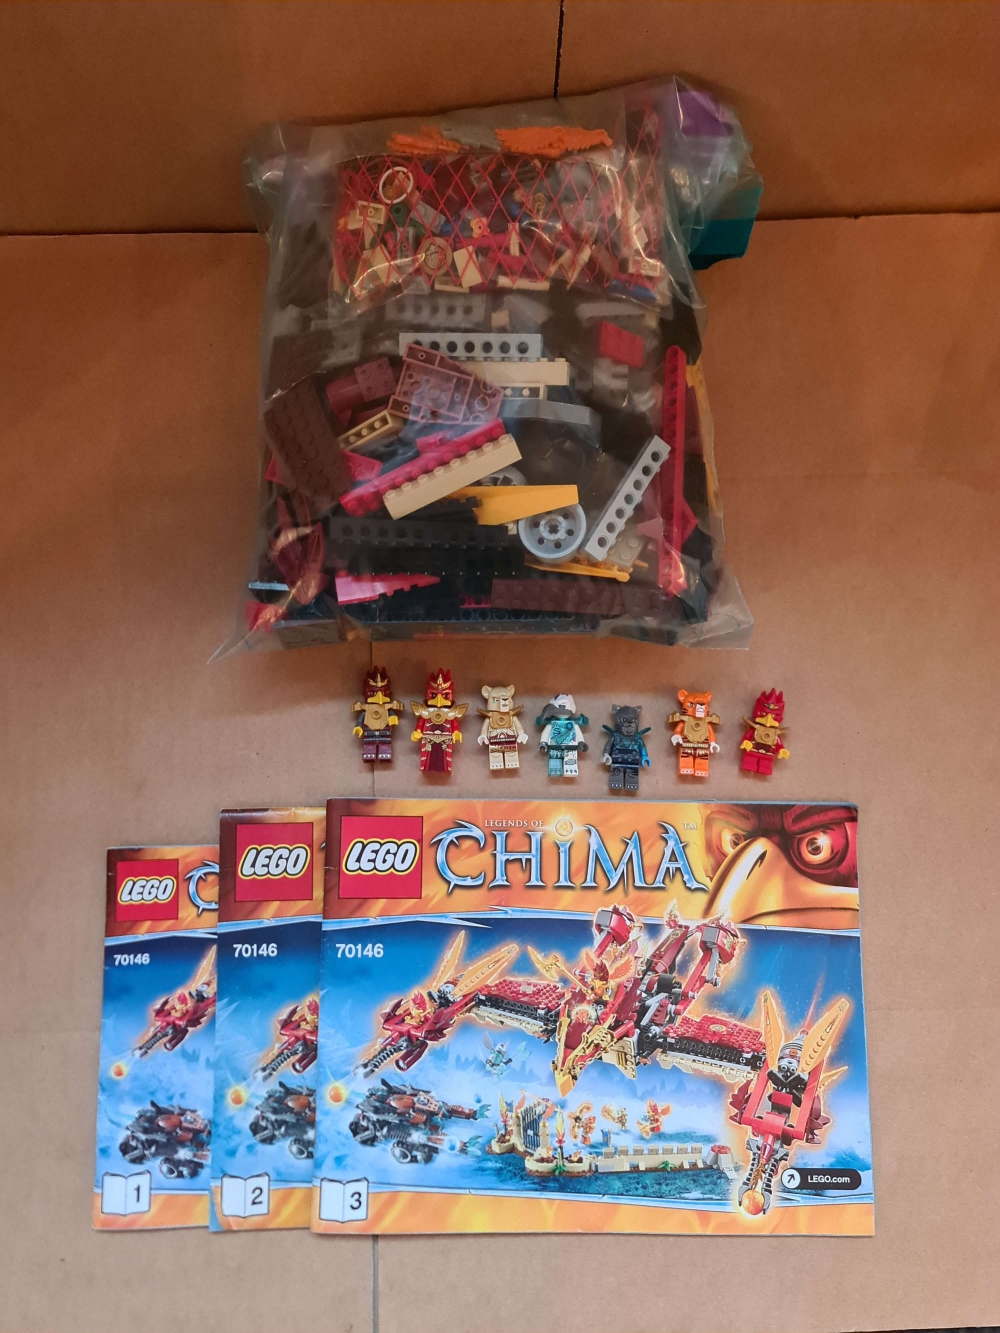 Sett 70146 fra Lego Chima serien.

Meget pent. Komplett med manualer. 